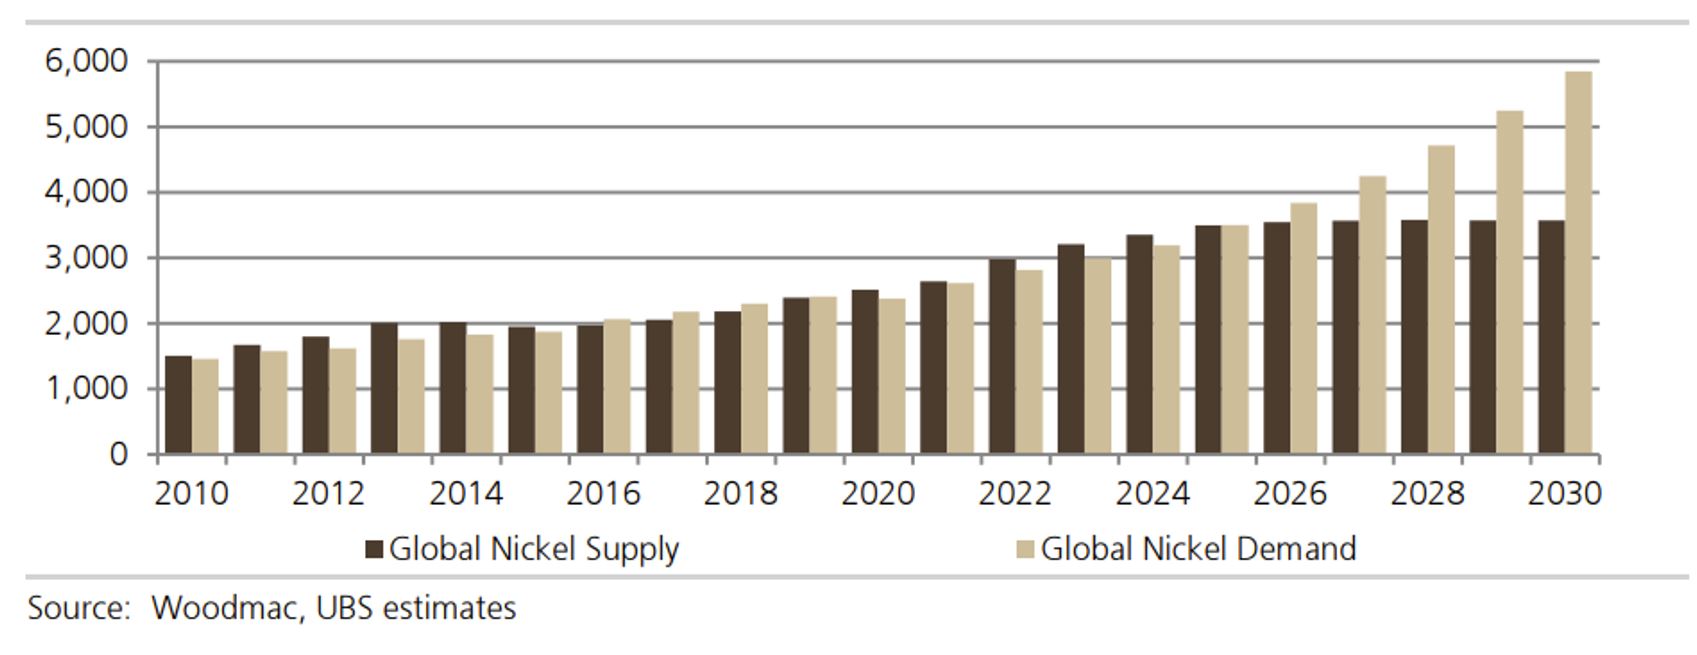 L'offre et la demande de nickel jusqu'en 2030